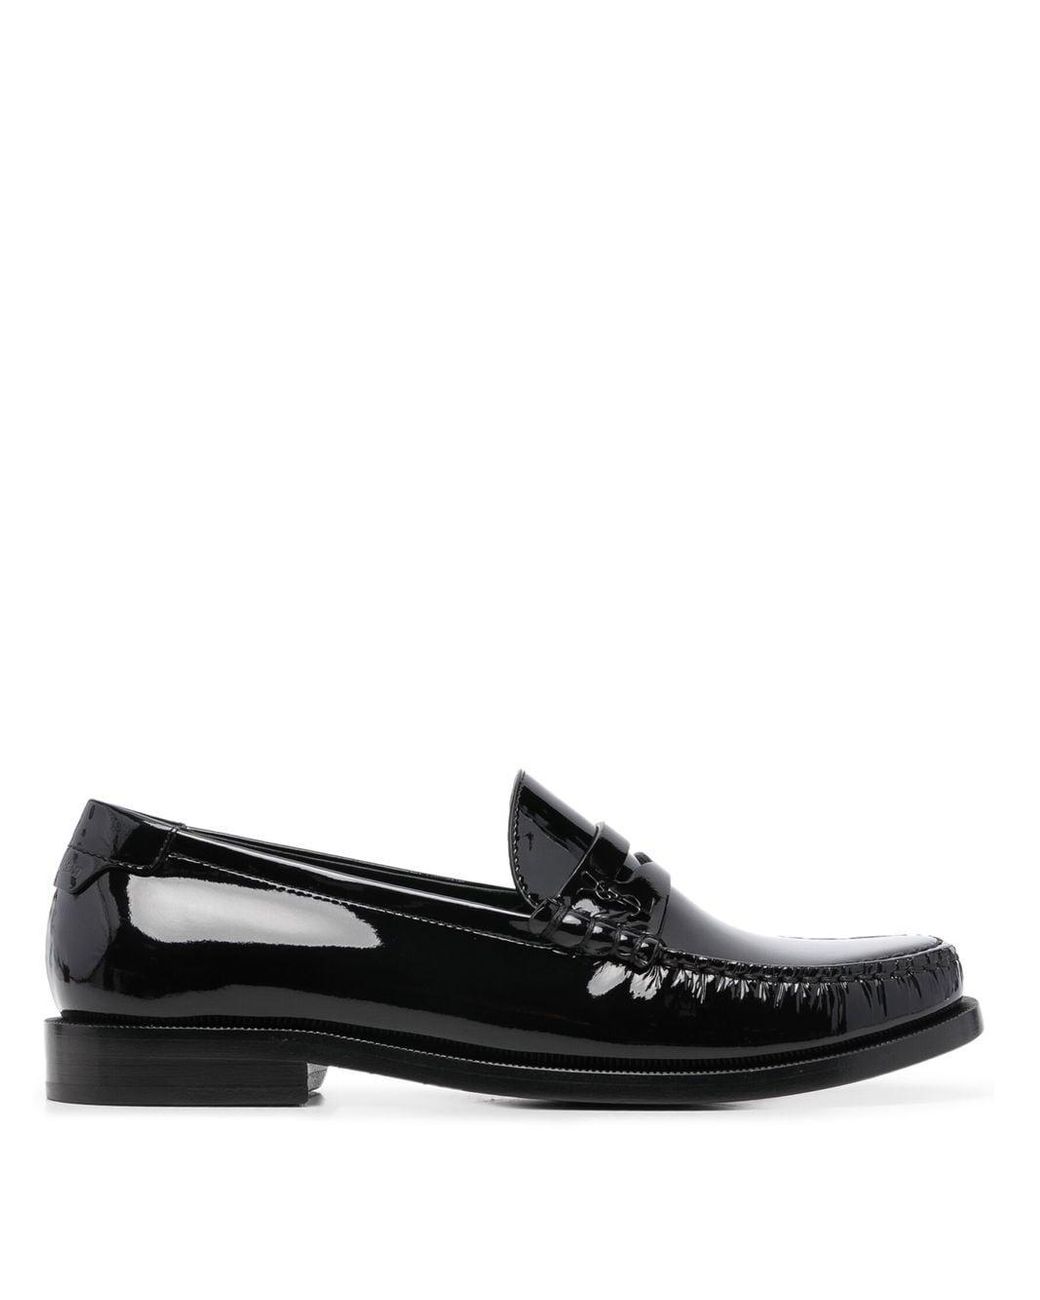 sandalias y chanclas de Mocasines Mocasines con cordones Saint Laurent de Cuero de color Negro Mujer Zapatos de Zapatos planos 